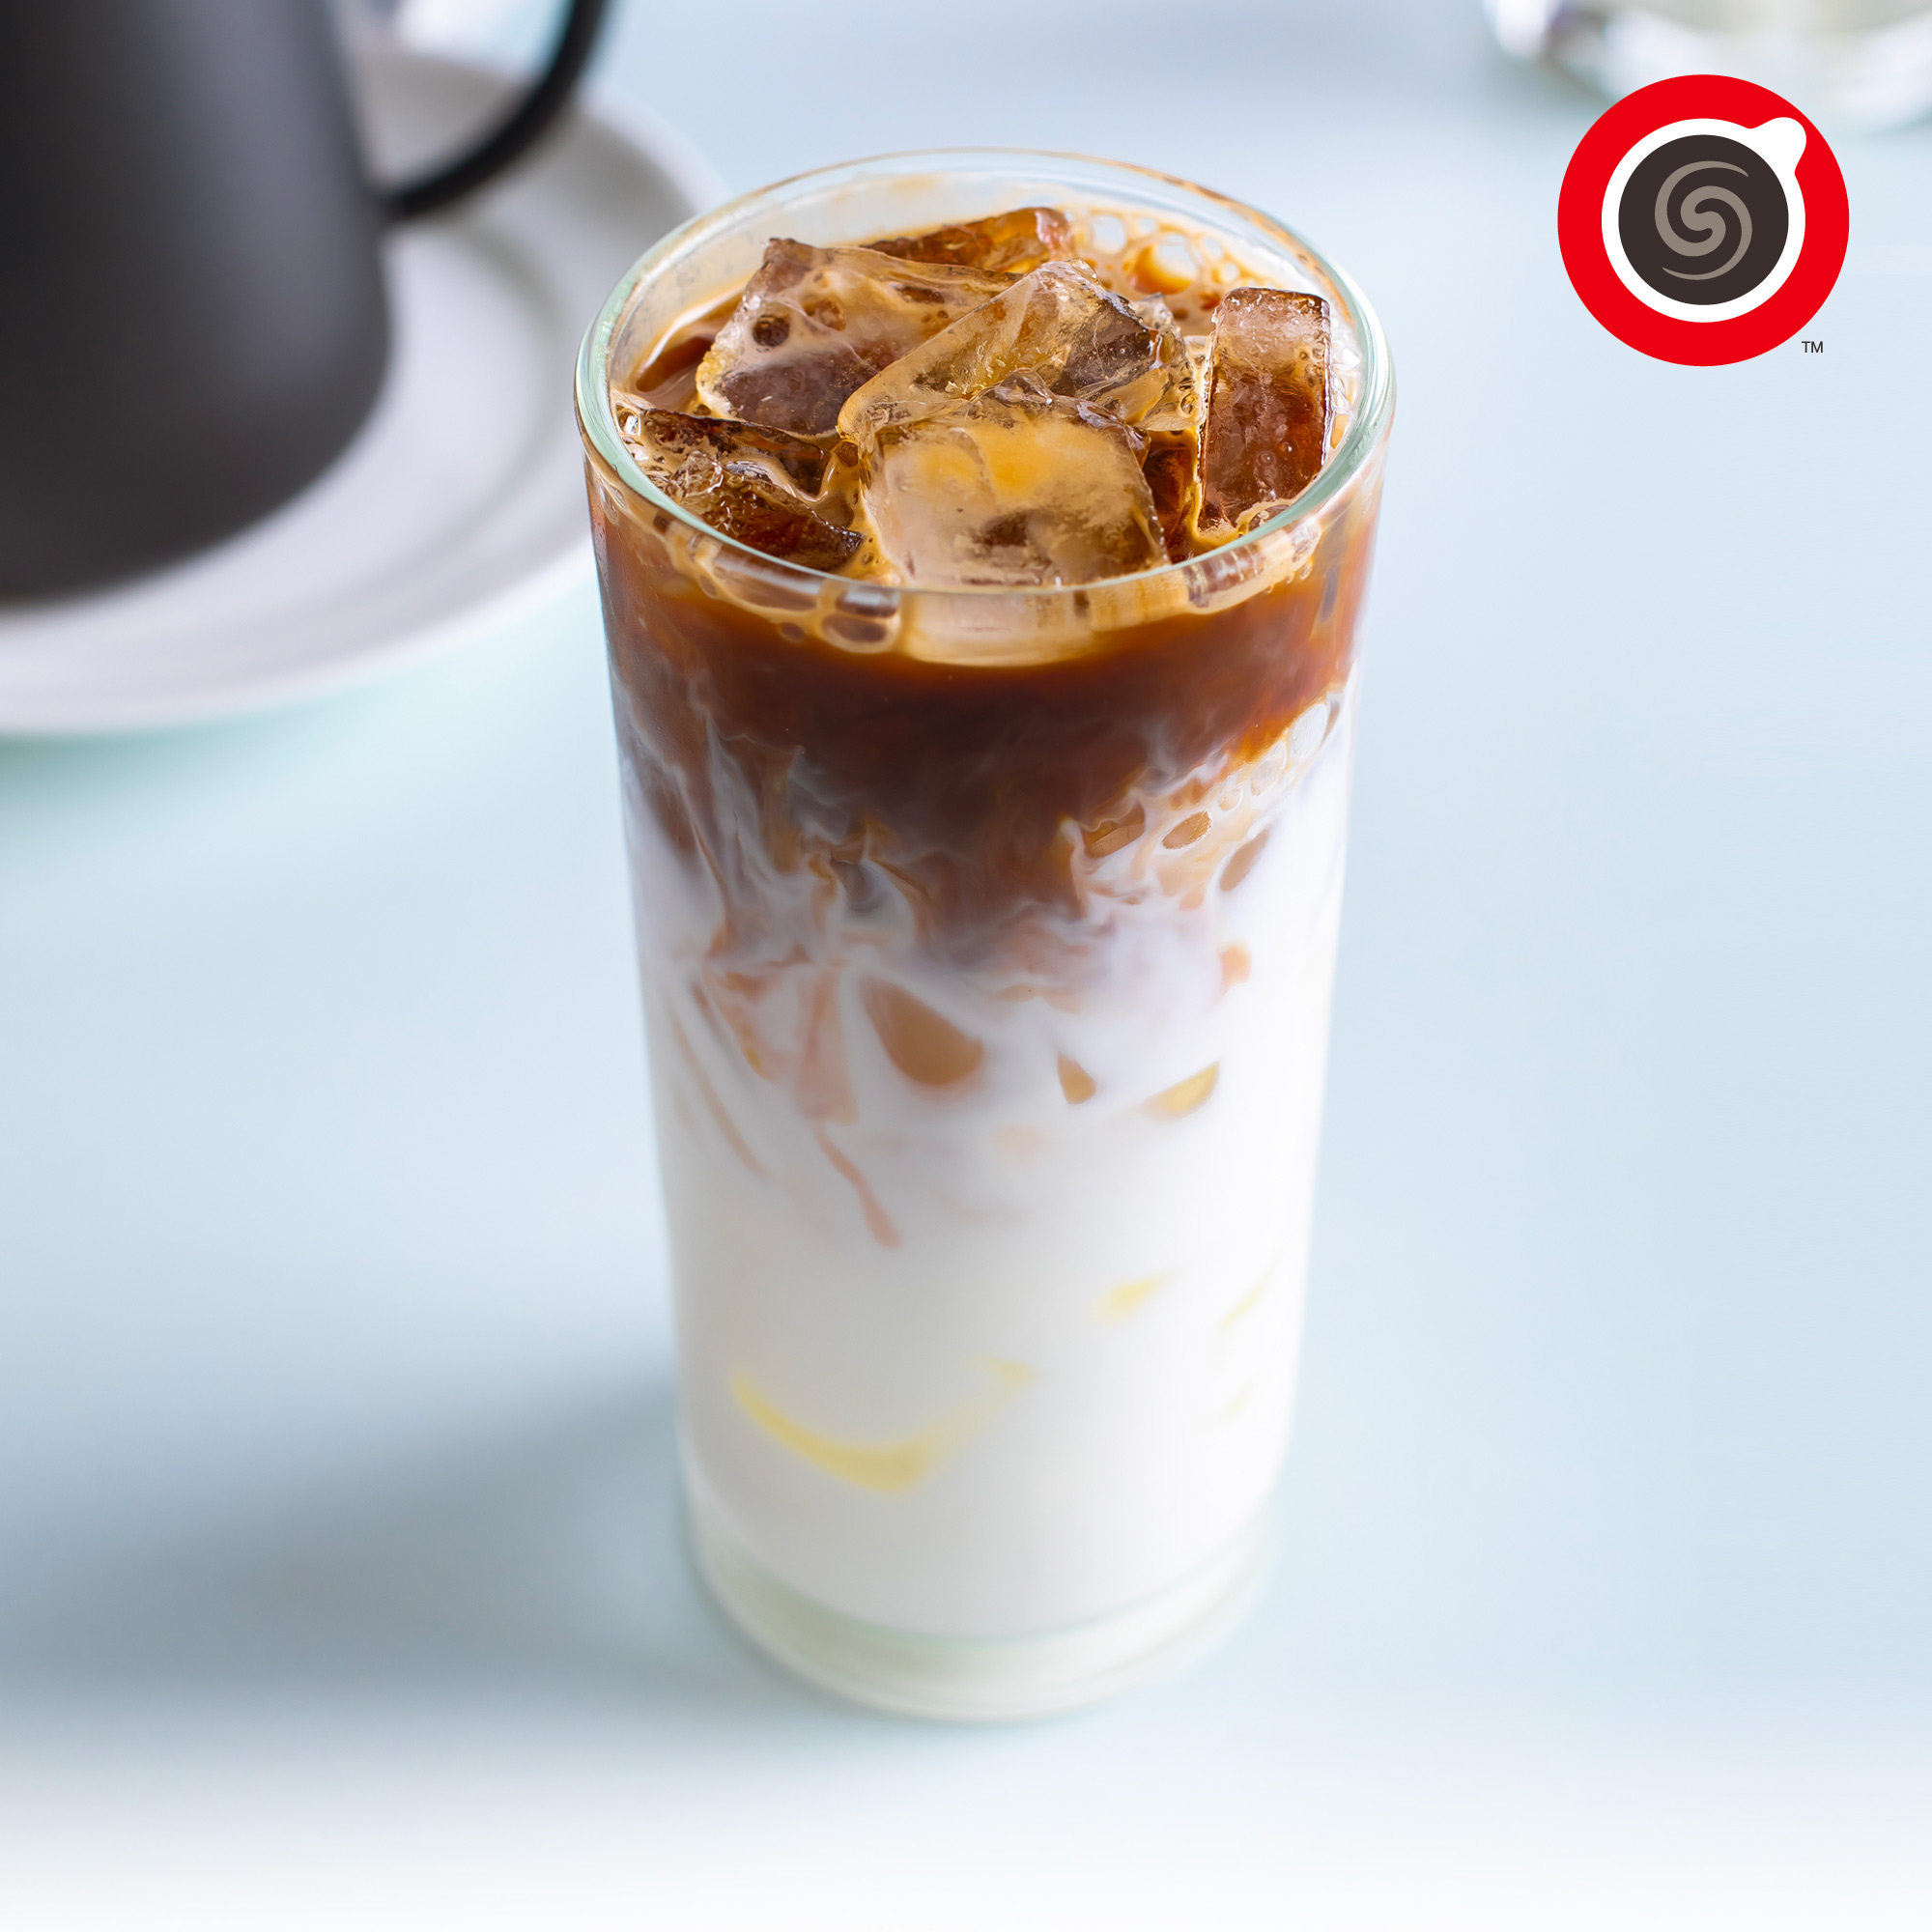 True Coffee E voucher Iced Latte size M ทรู คอฟฟี่ คูปอง กาแฟลาเต้เย็น ขนาดกลาง (16 ออนซ์)